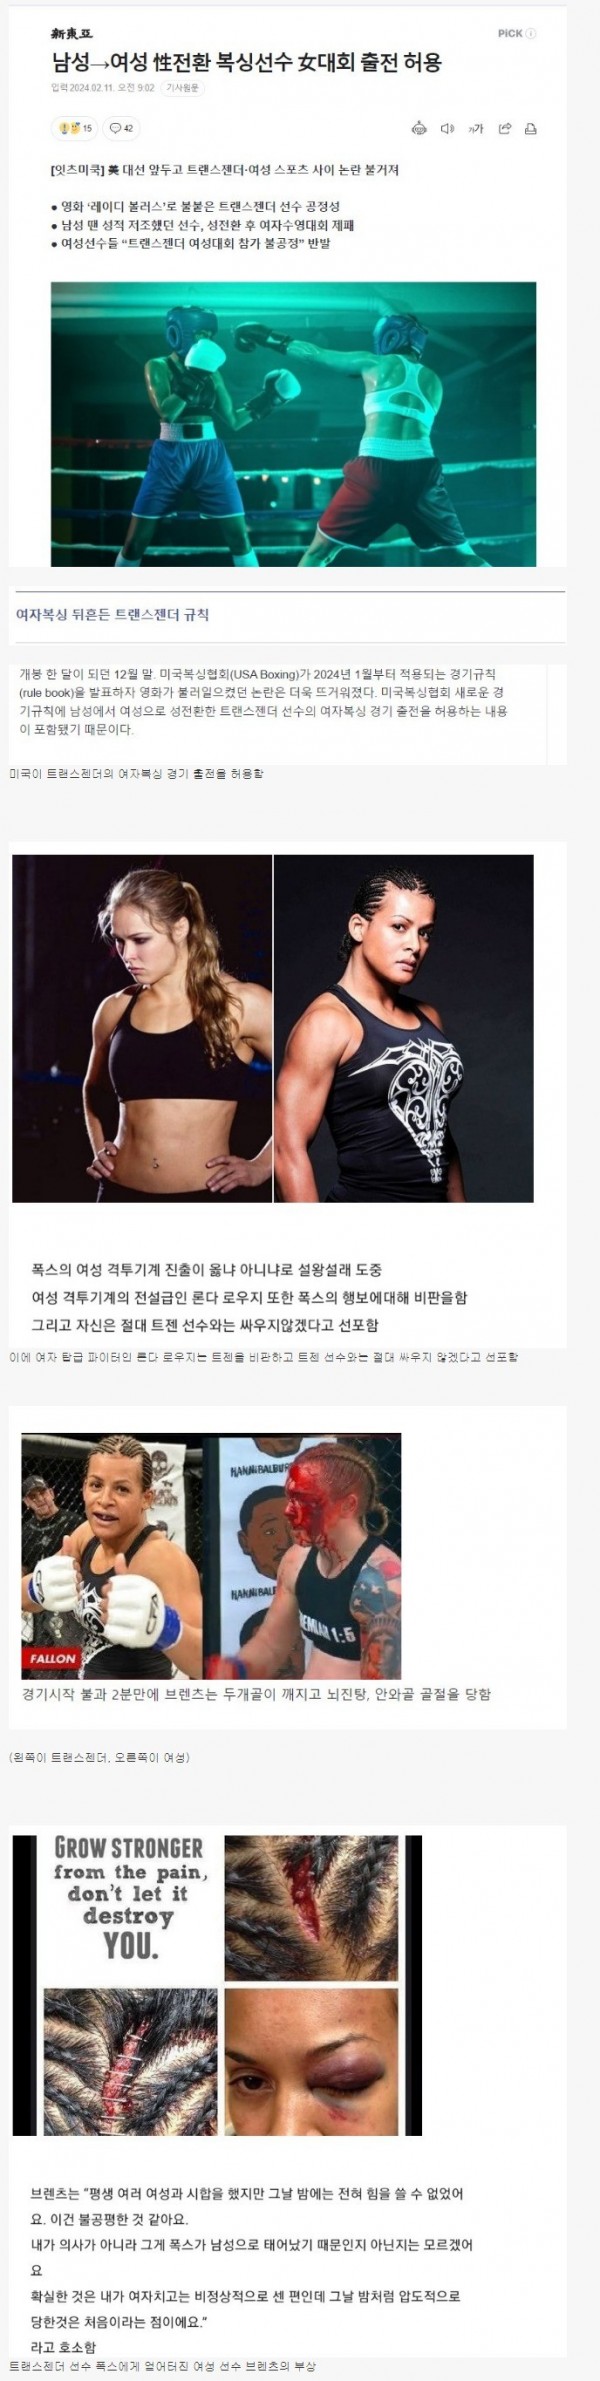 트랜스젠더 선수의 여자 격투기 대회 출전 허용 결과물